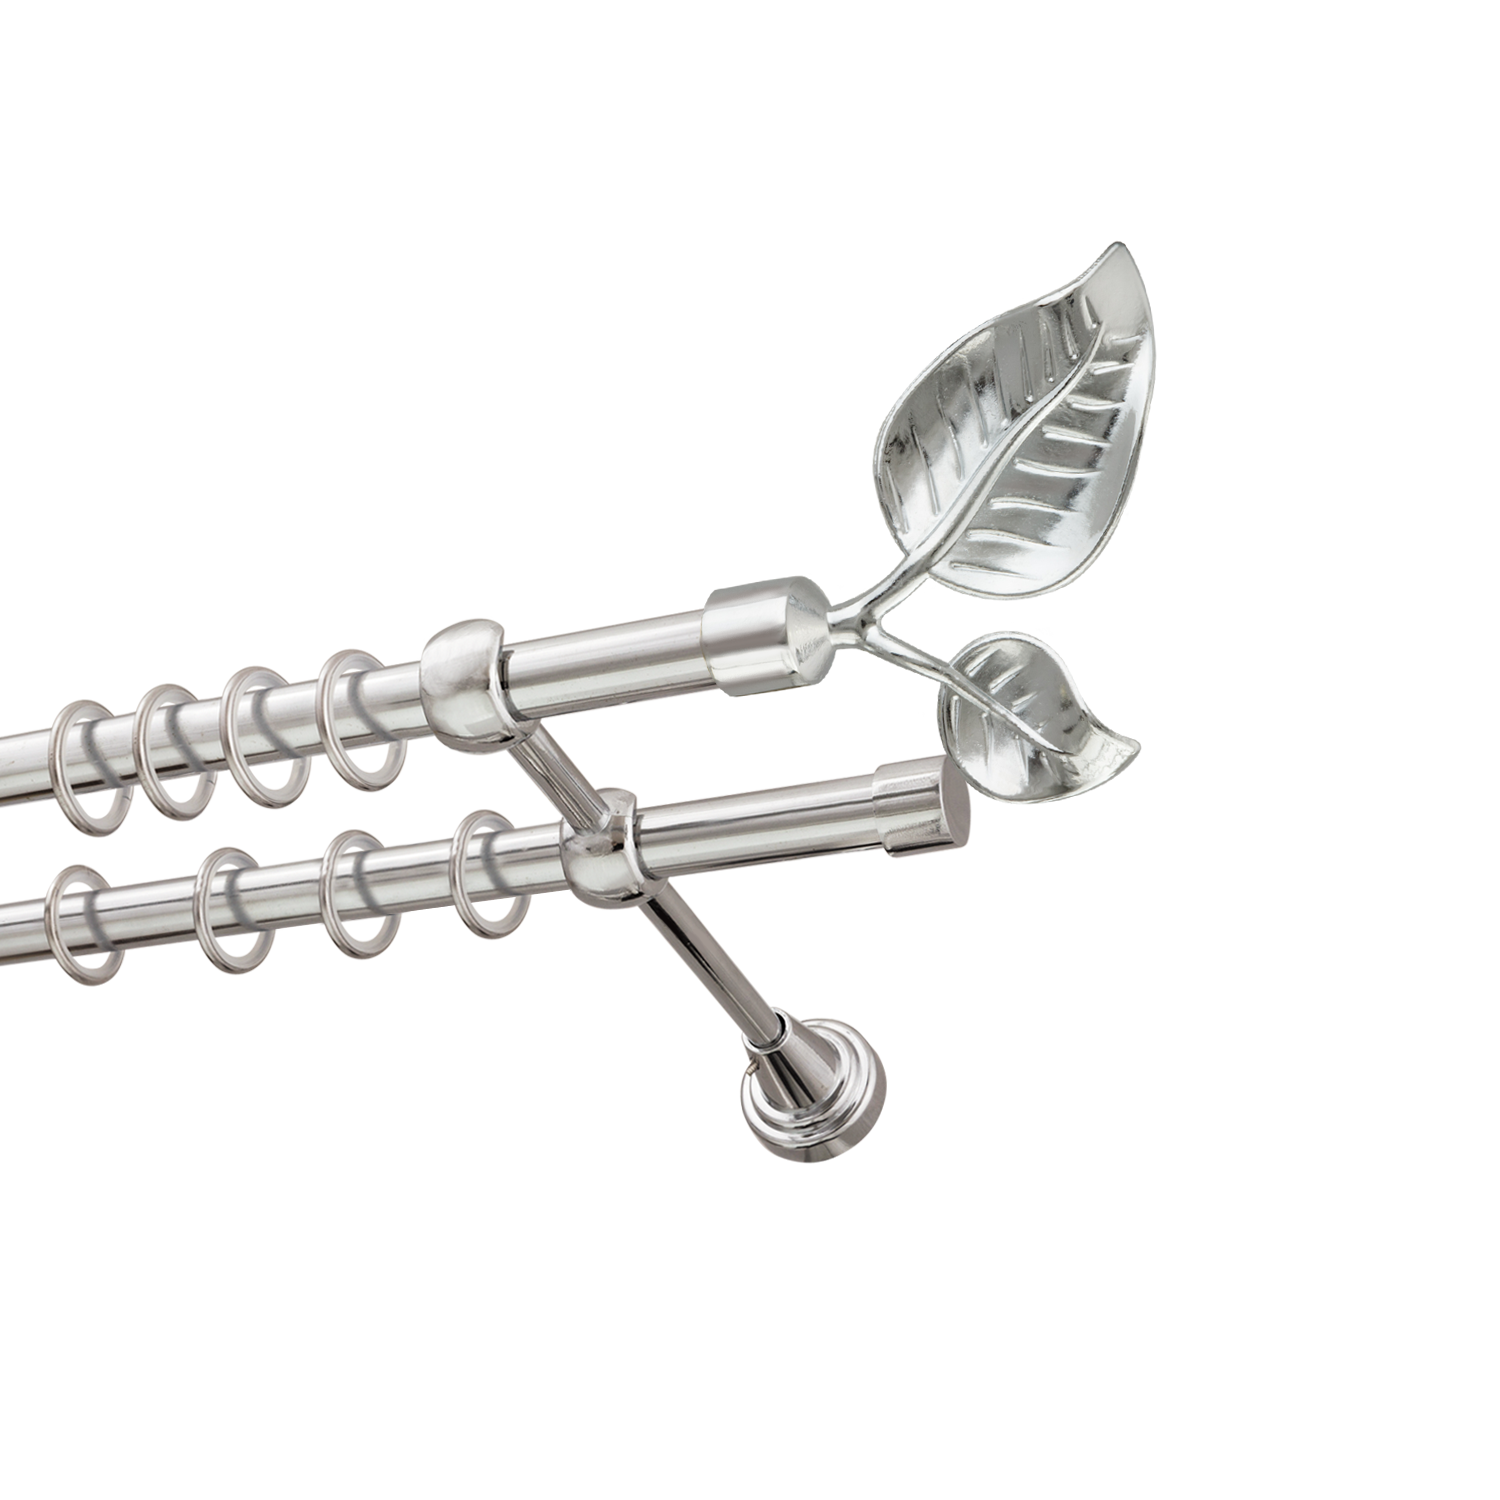 Металлический карниз для штор Тропик, двухрядный 16/16 мм, серебро, гладкая штанга, длина 200 см - фото Wikidecor.ru